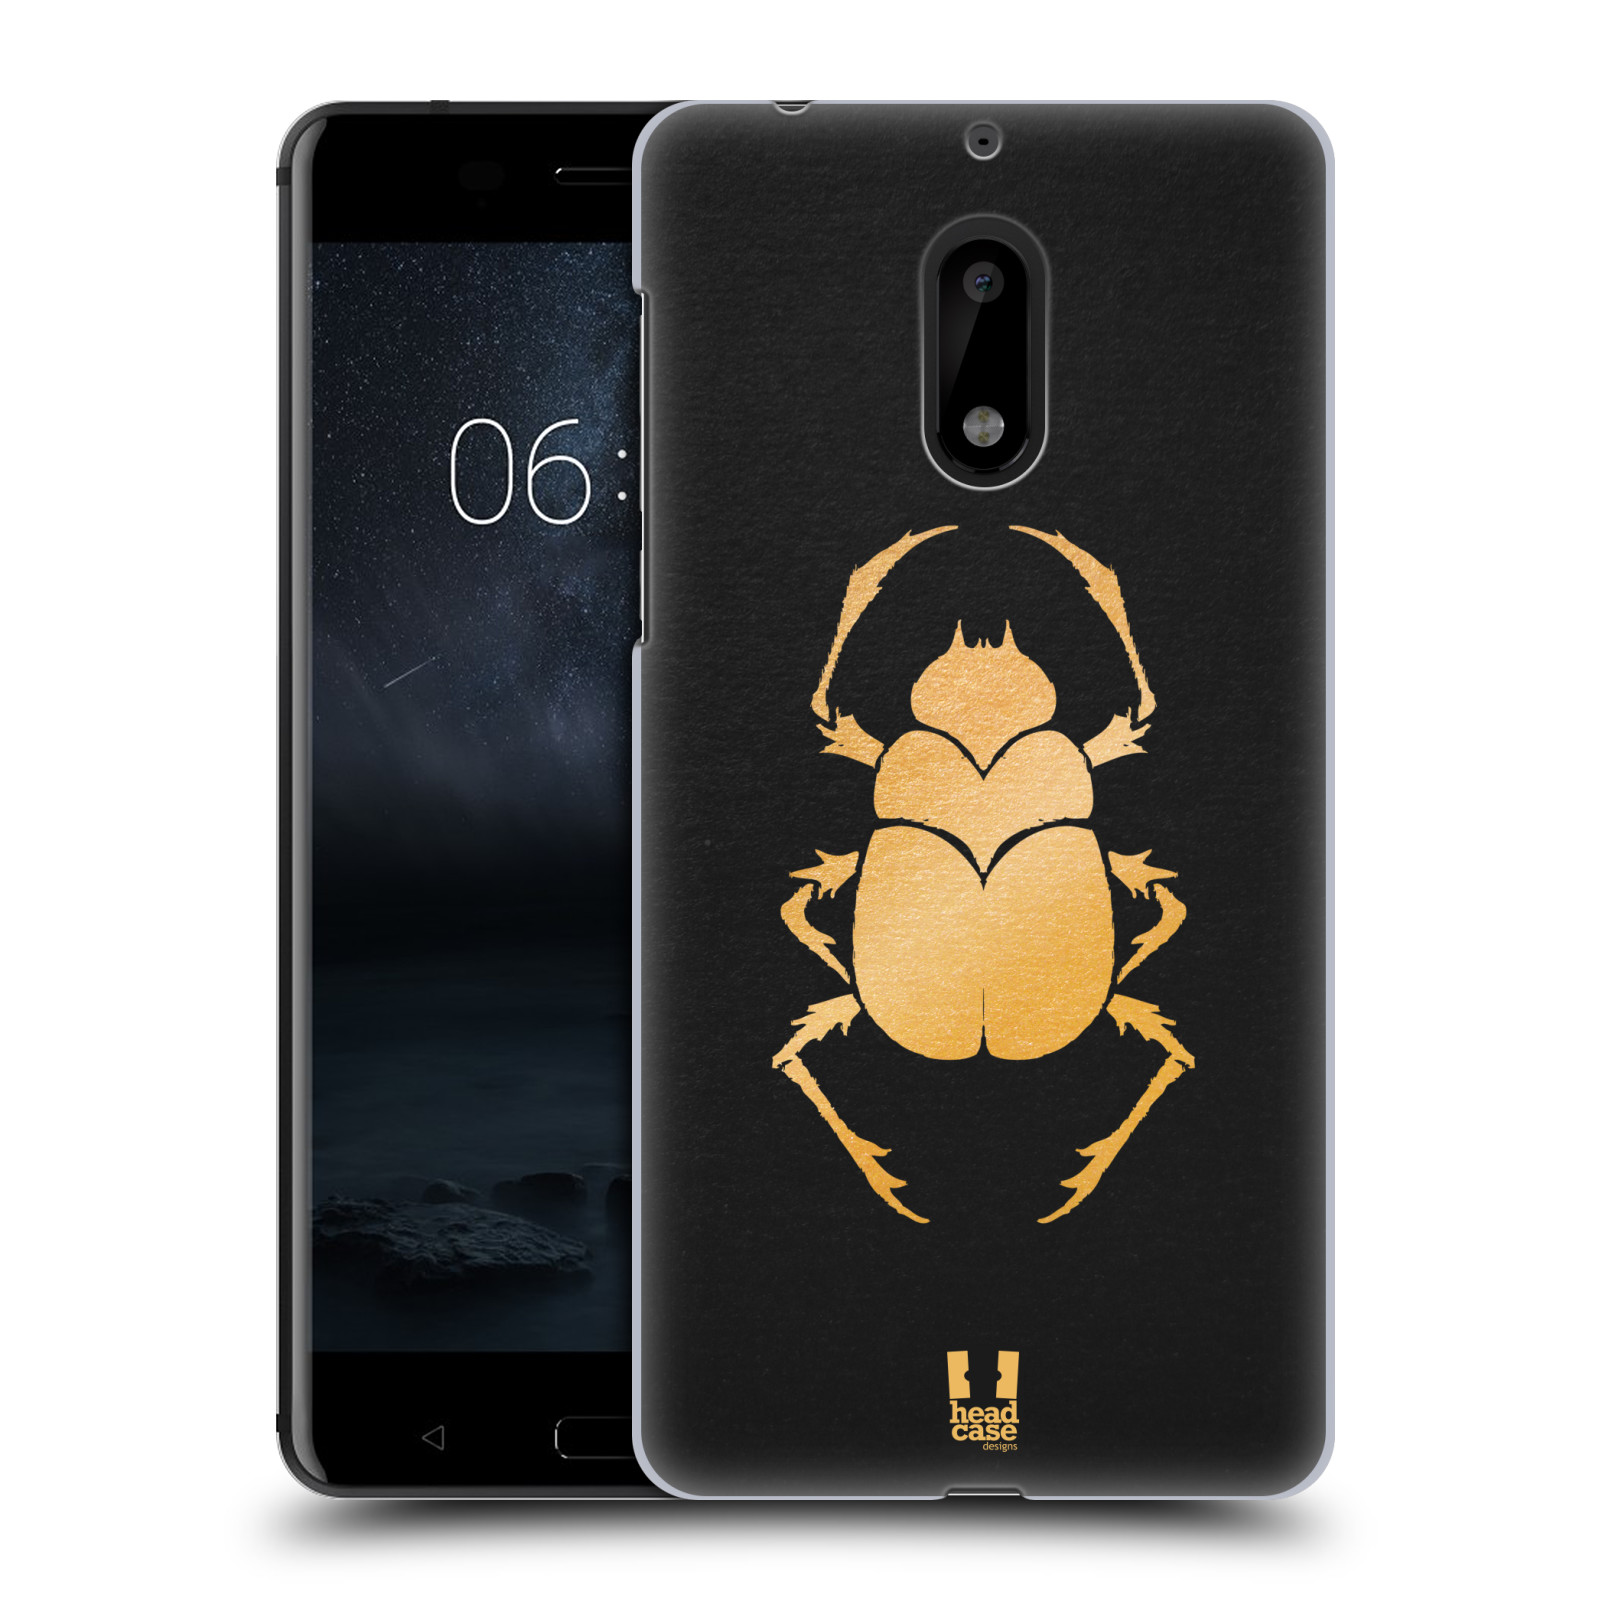 HEAD CASE plastový obal na mobil Nokia 6 vzor EGYPT zlatá a černá BROUK SKARAB